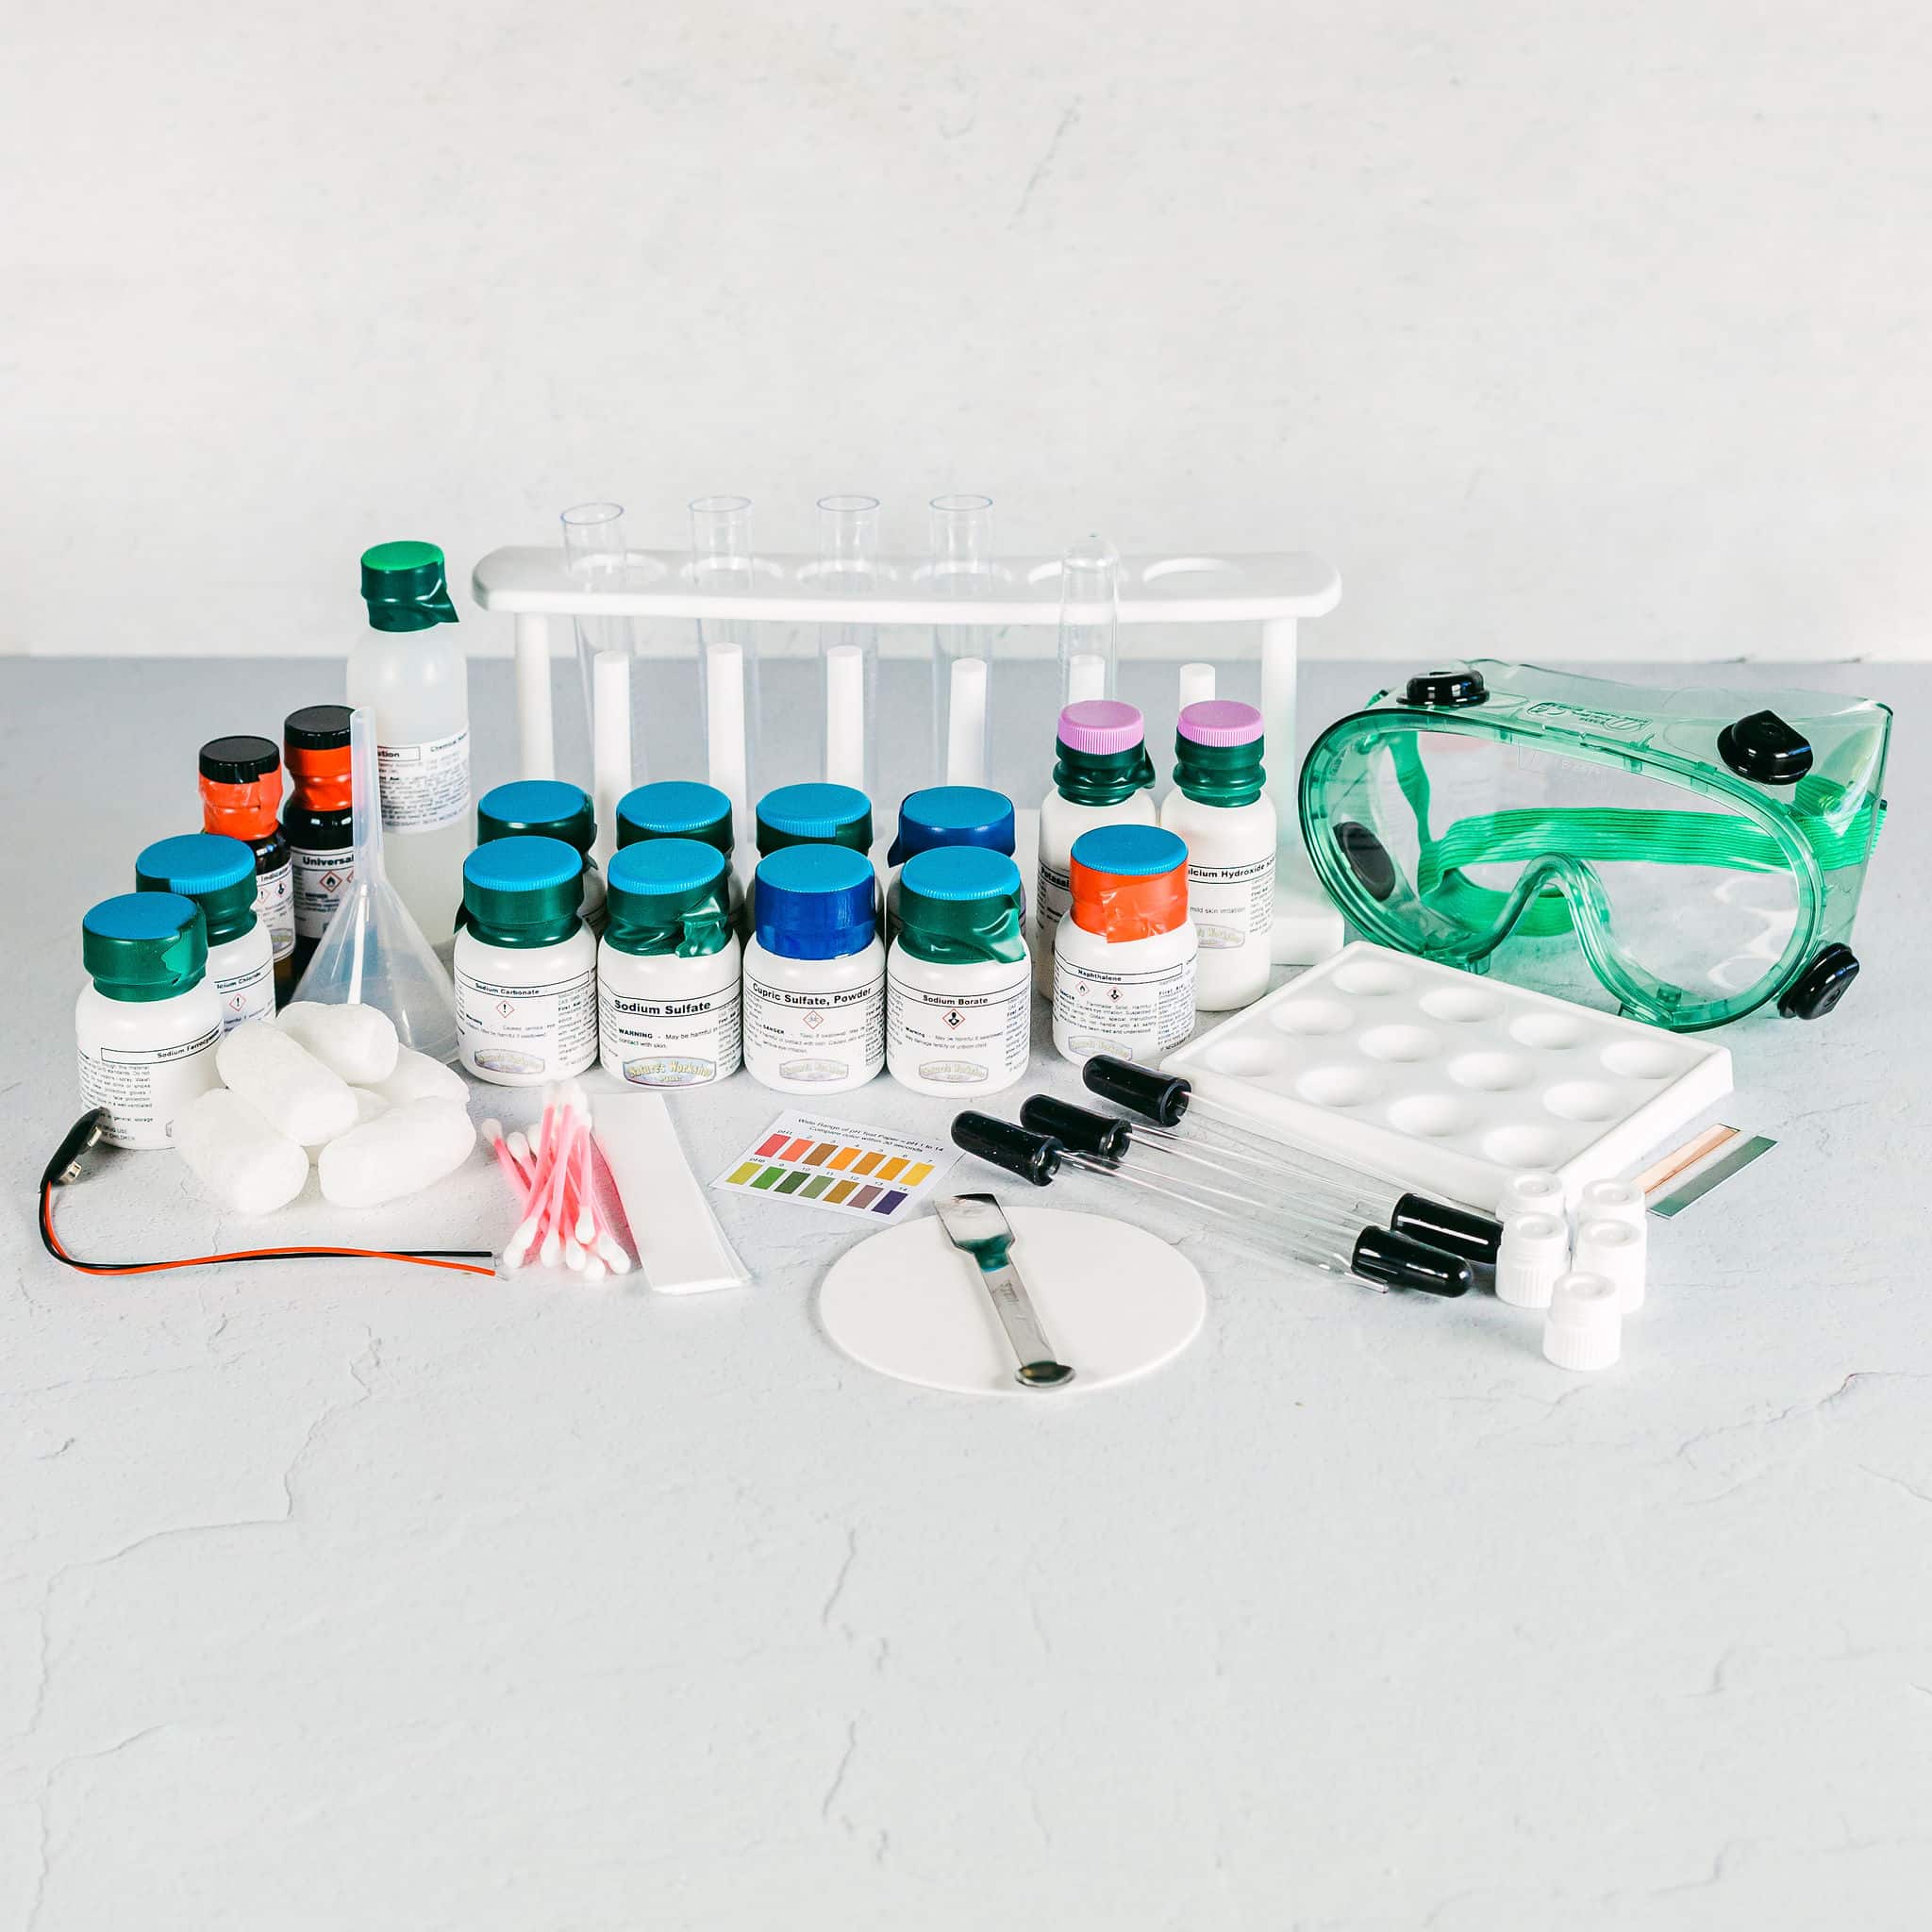 Kit de chimie avancée – Altay Scientific Group – Products